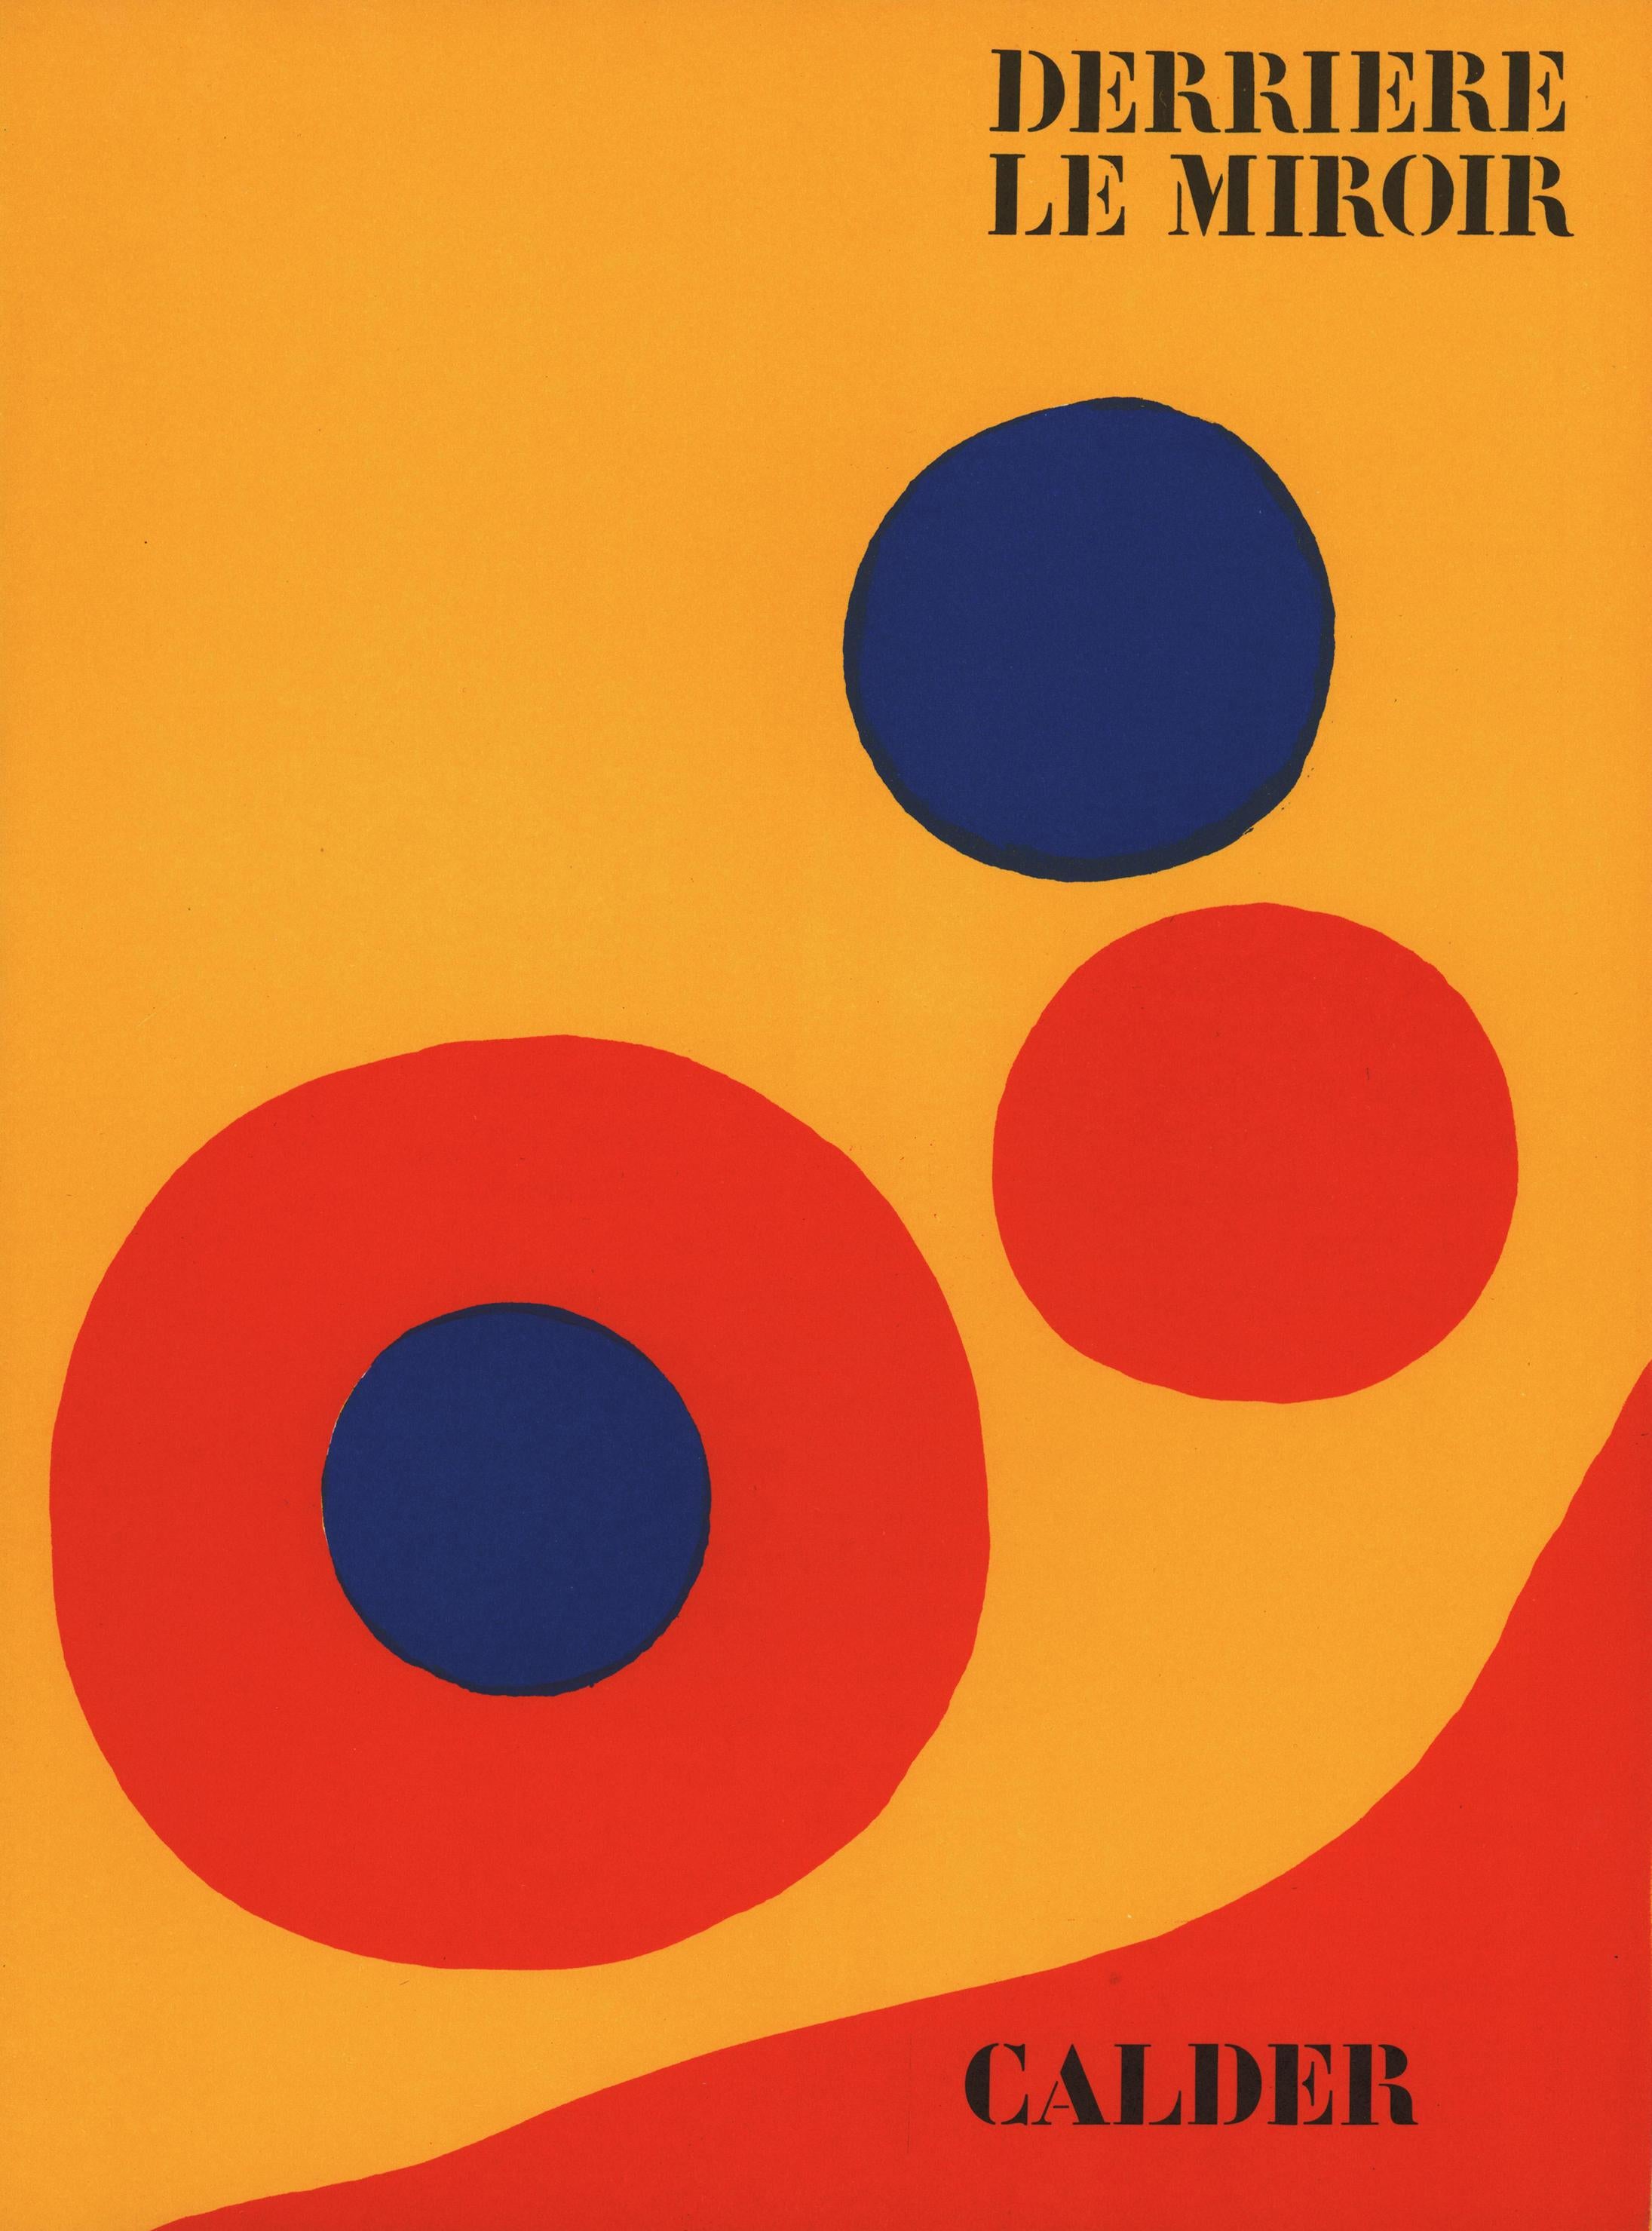 Alexander Calder Couverture lithographique Derrière le miroir 1973 